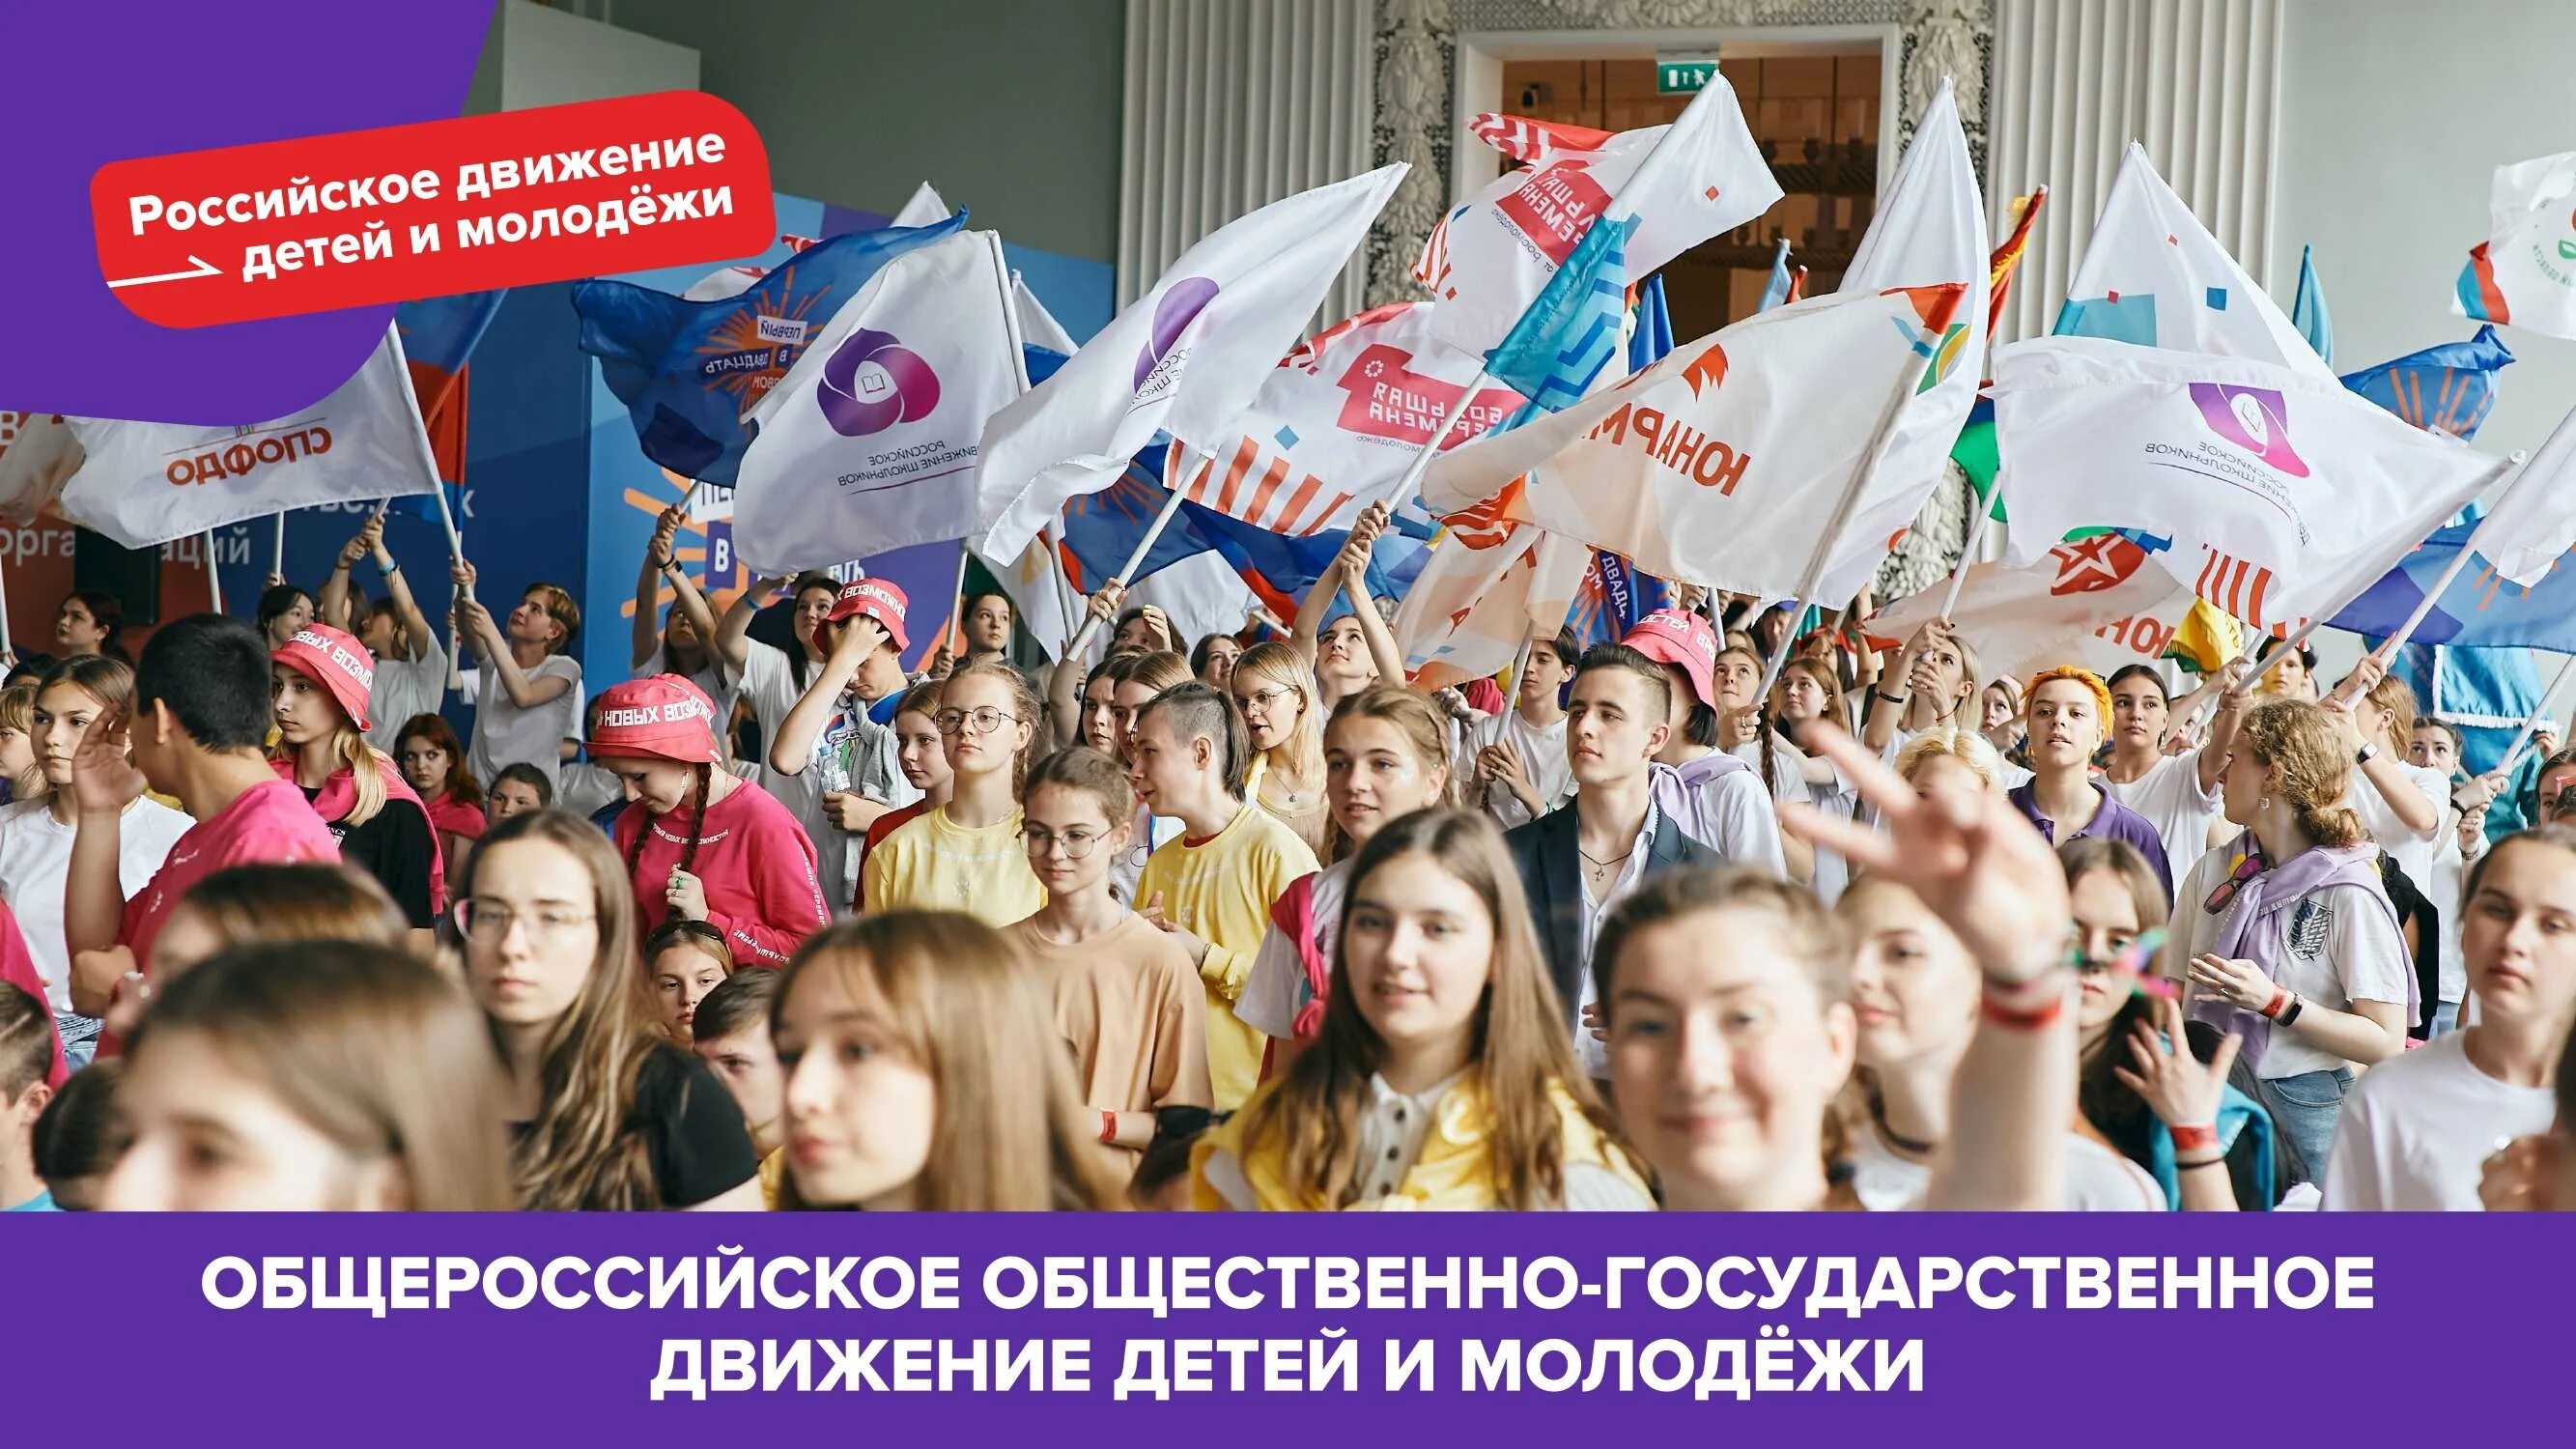 Сайт движения первых войти. Российское движение детей и молодежи. Россицское движение детей и молодёжи. Российское движение детей и молодёжи движение. Российское движение детей и молодежи движение первых.